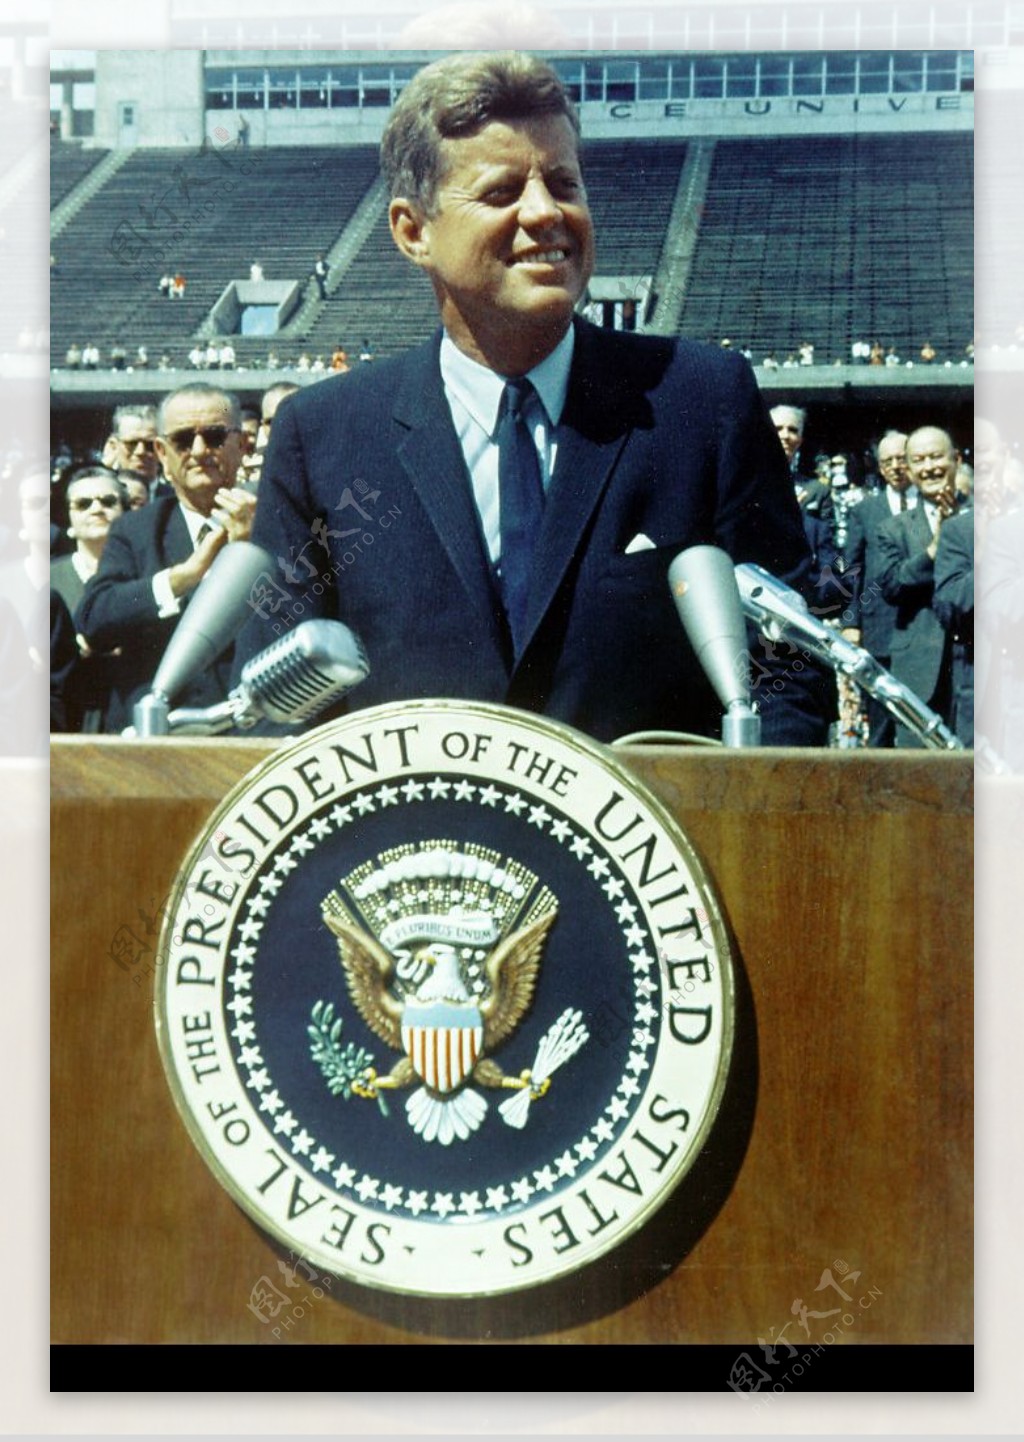 美国总统约翰183F183肯尼迪在赖斯大学